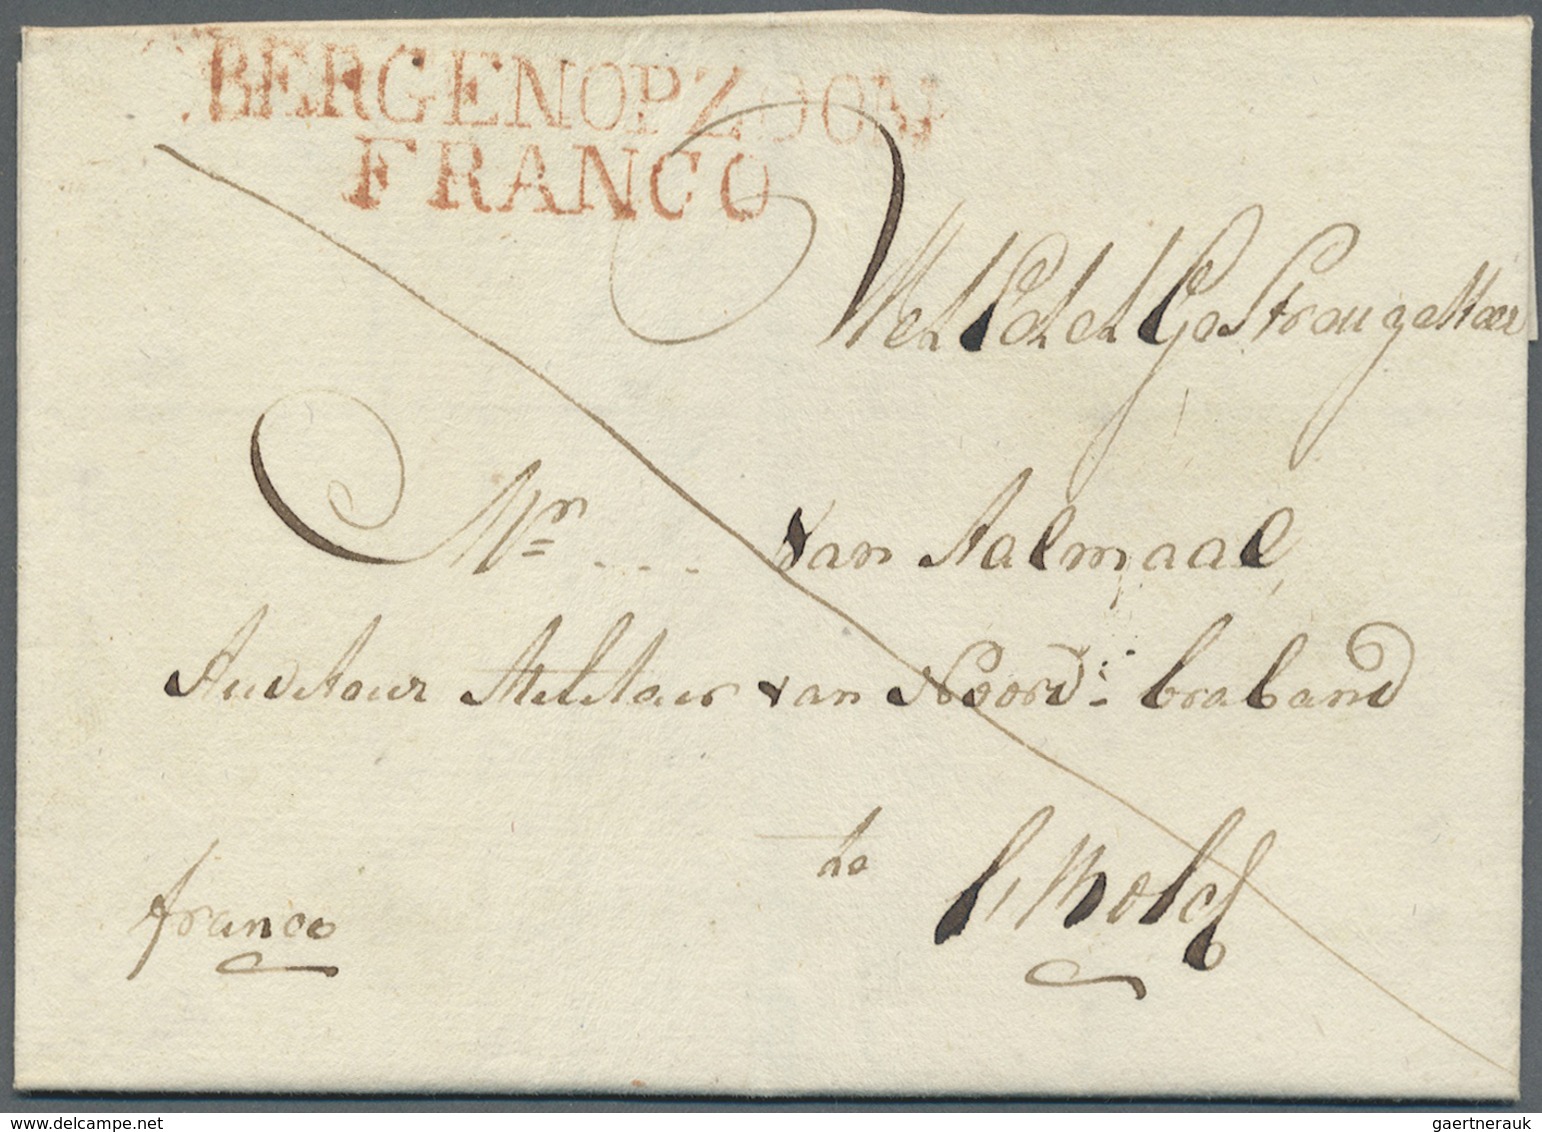 Br Niederlande - Vorphilatelie: 1700/1868, gehaltvolle Sammlung mit über 60 Briefen im Album. Dabei 3 B